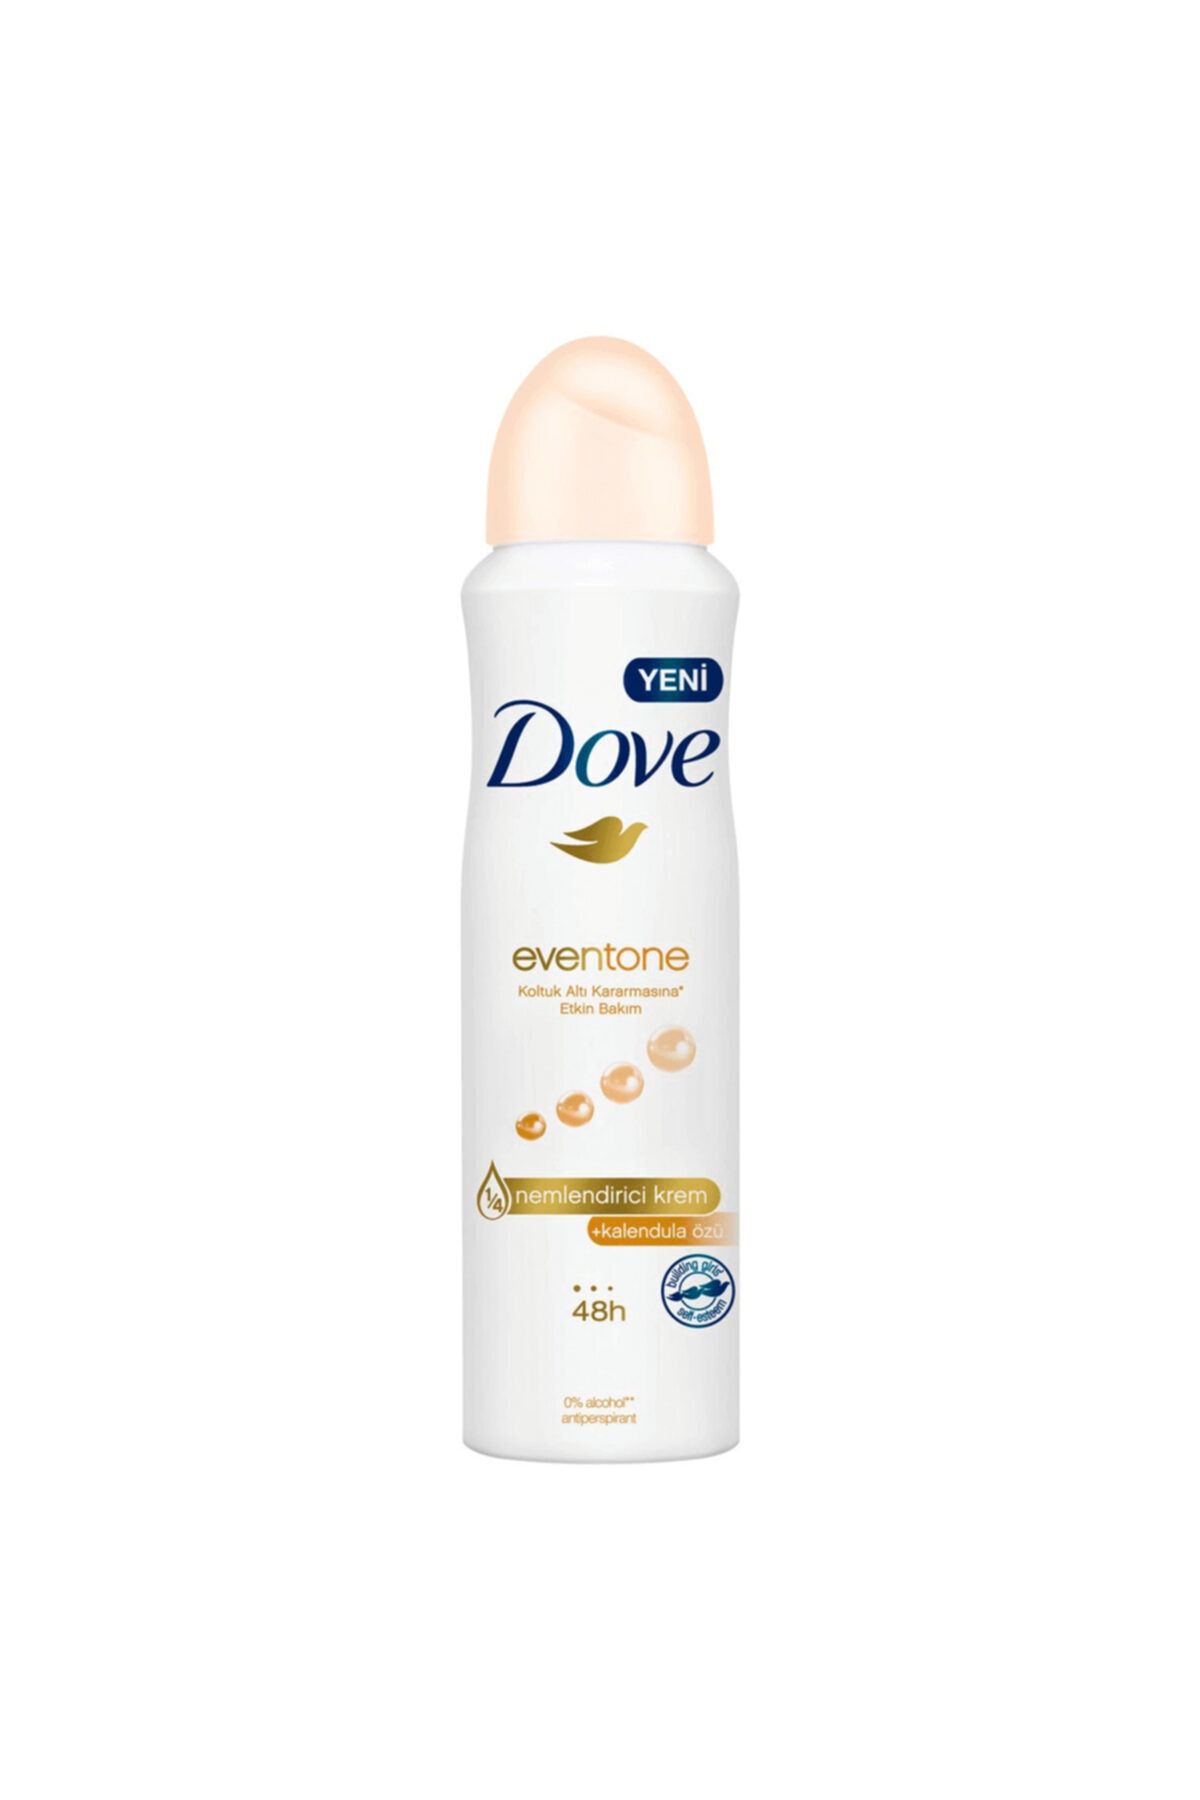 Dove Eventone Kadın Sprey Deodorant Kalendula Özü Koltuk Altı Kararmasına Etkin Bakım 150 Ml